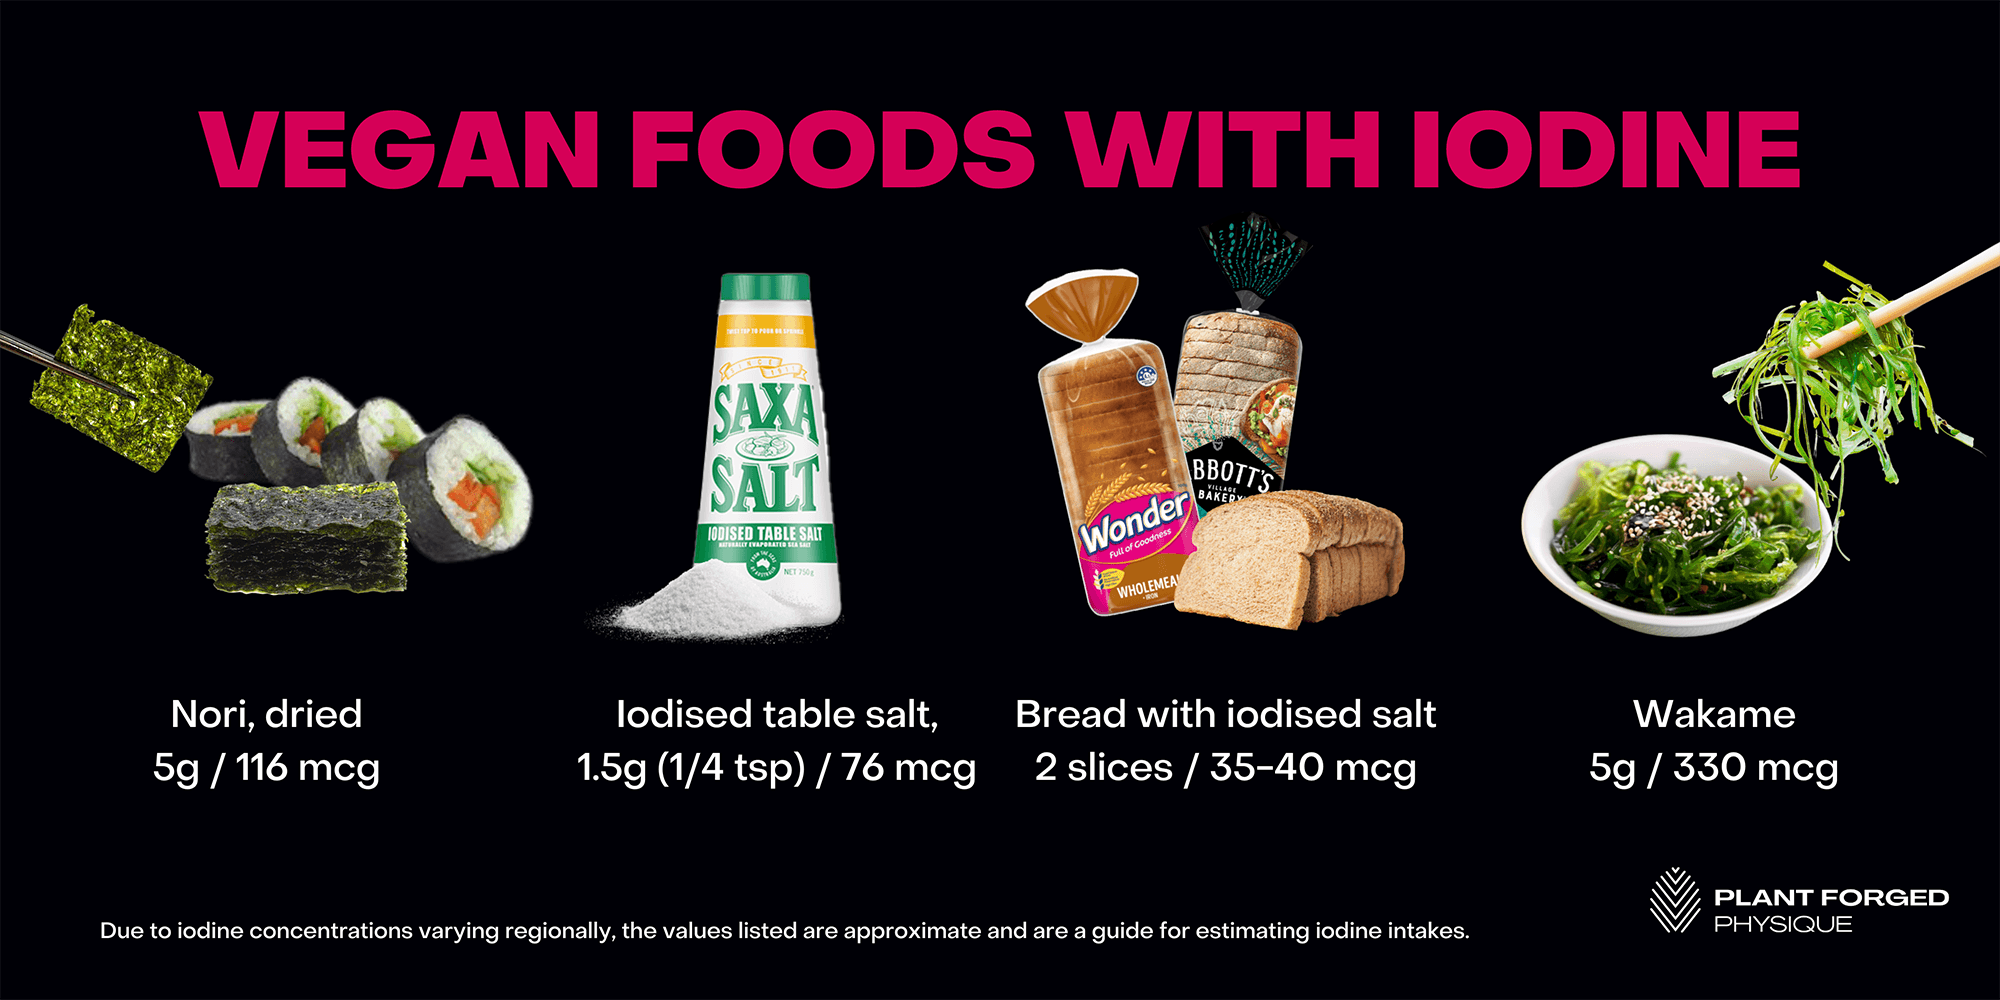 Vegan foods with iodine